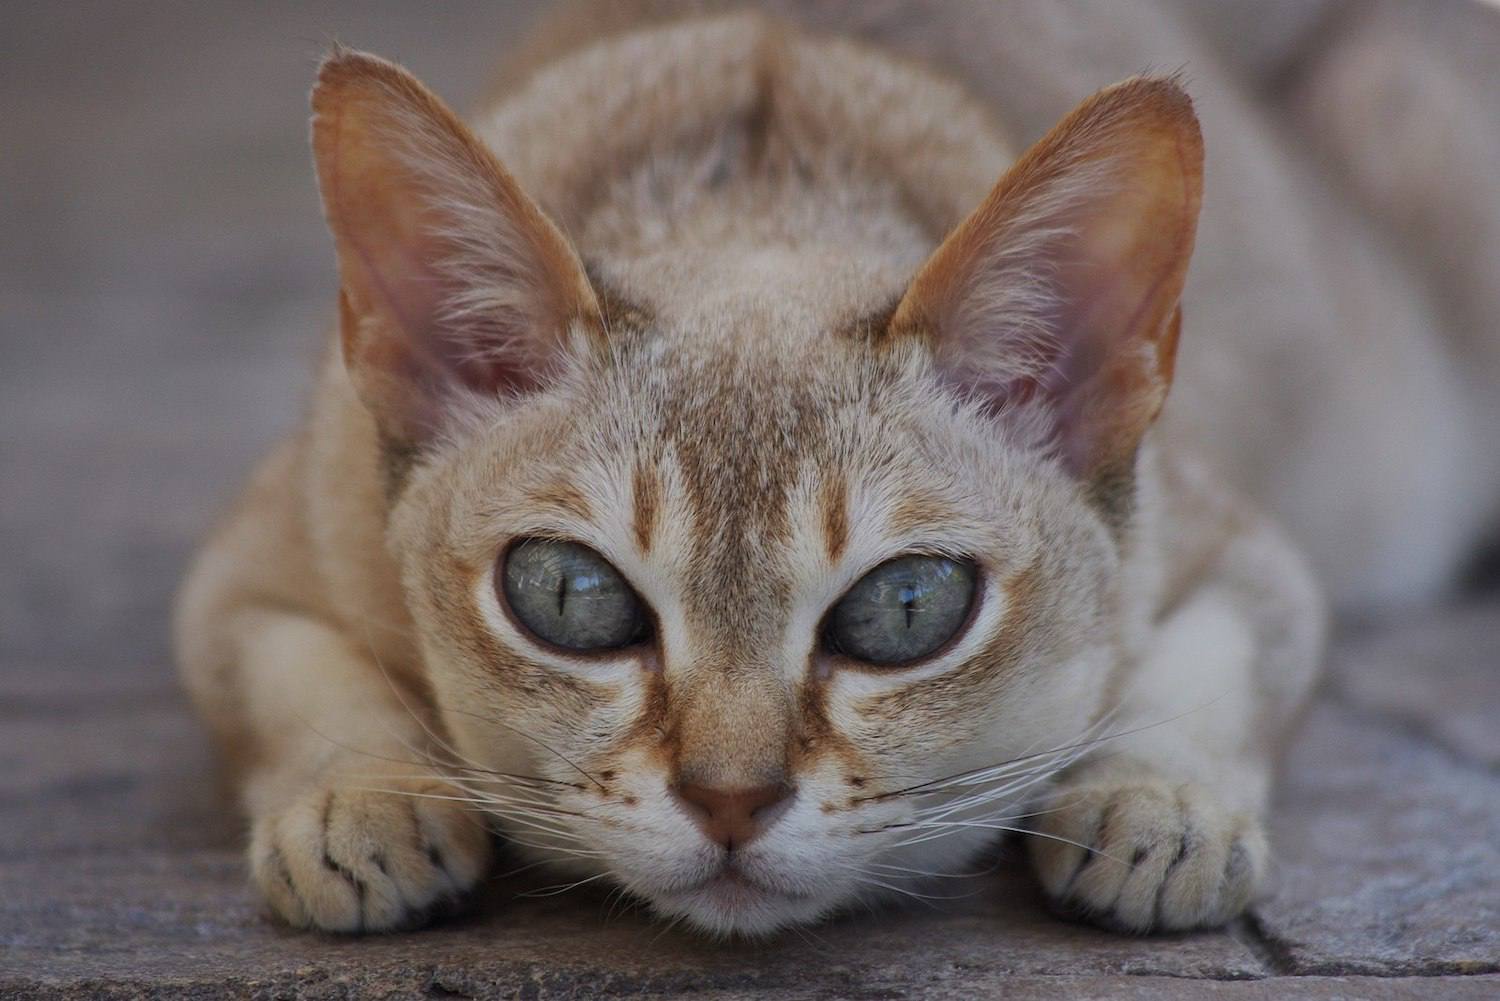 singapura cat crouching